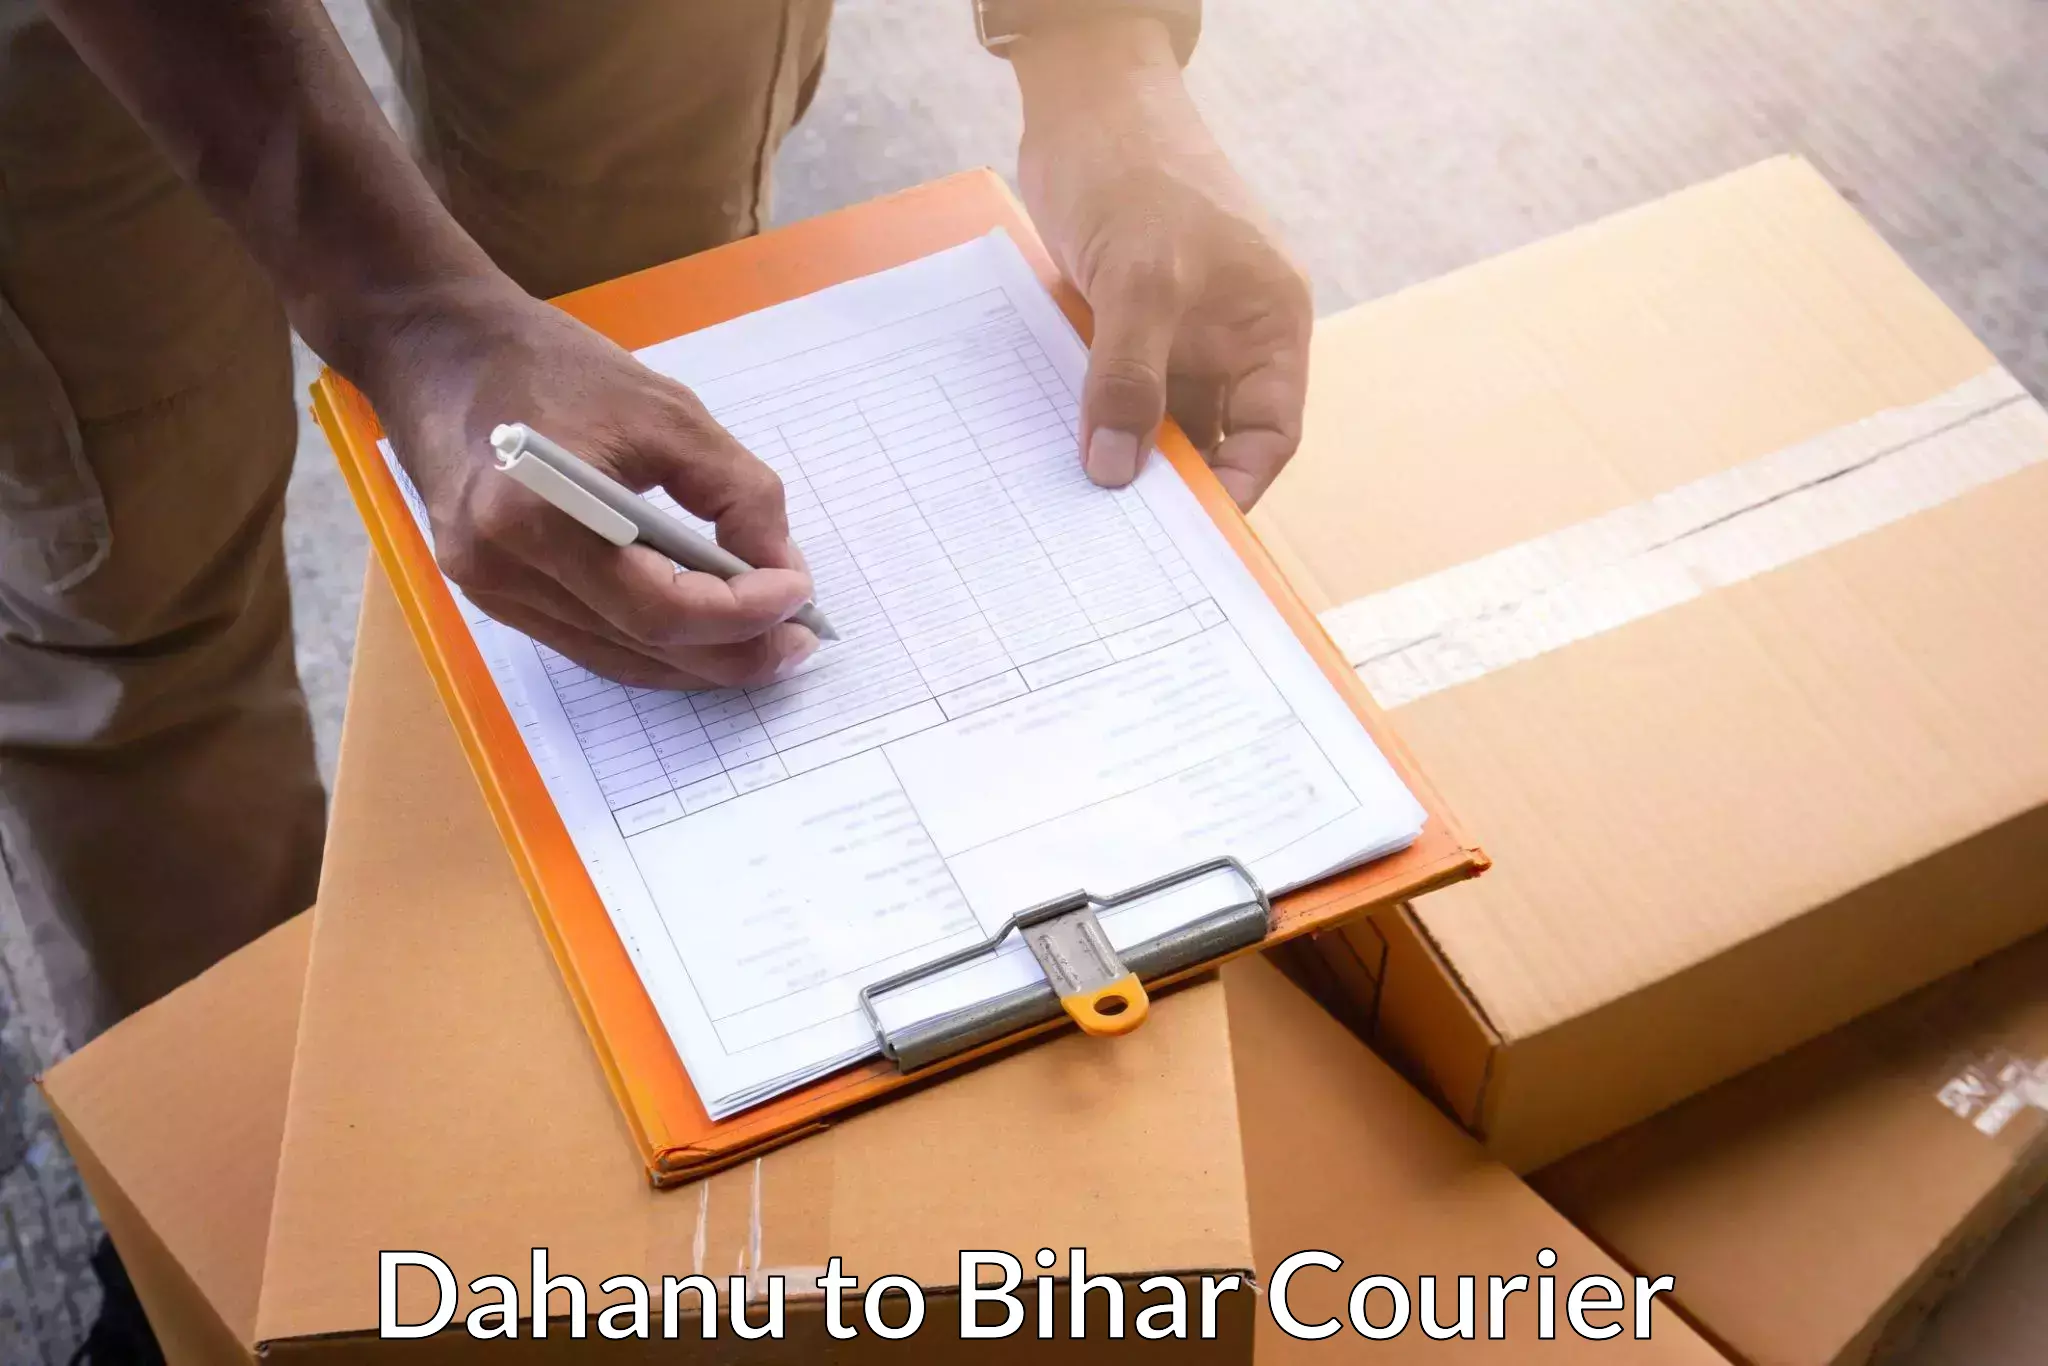 Tech-enabled shipping Dahanu to Rusera